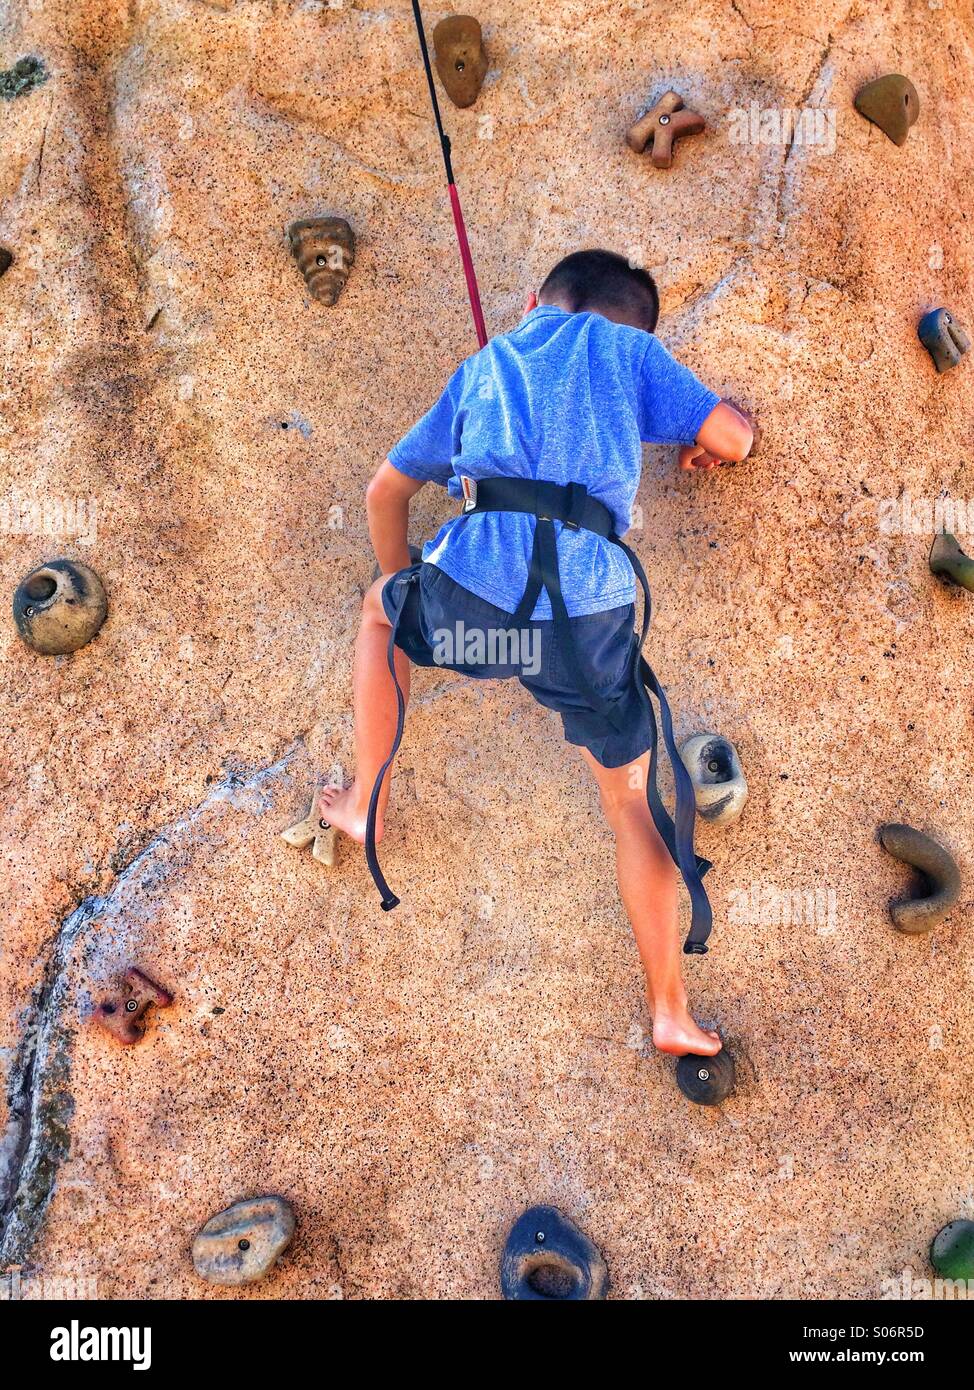 A young boy climbing a rock wall Stock Photo